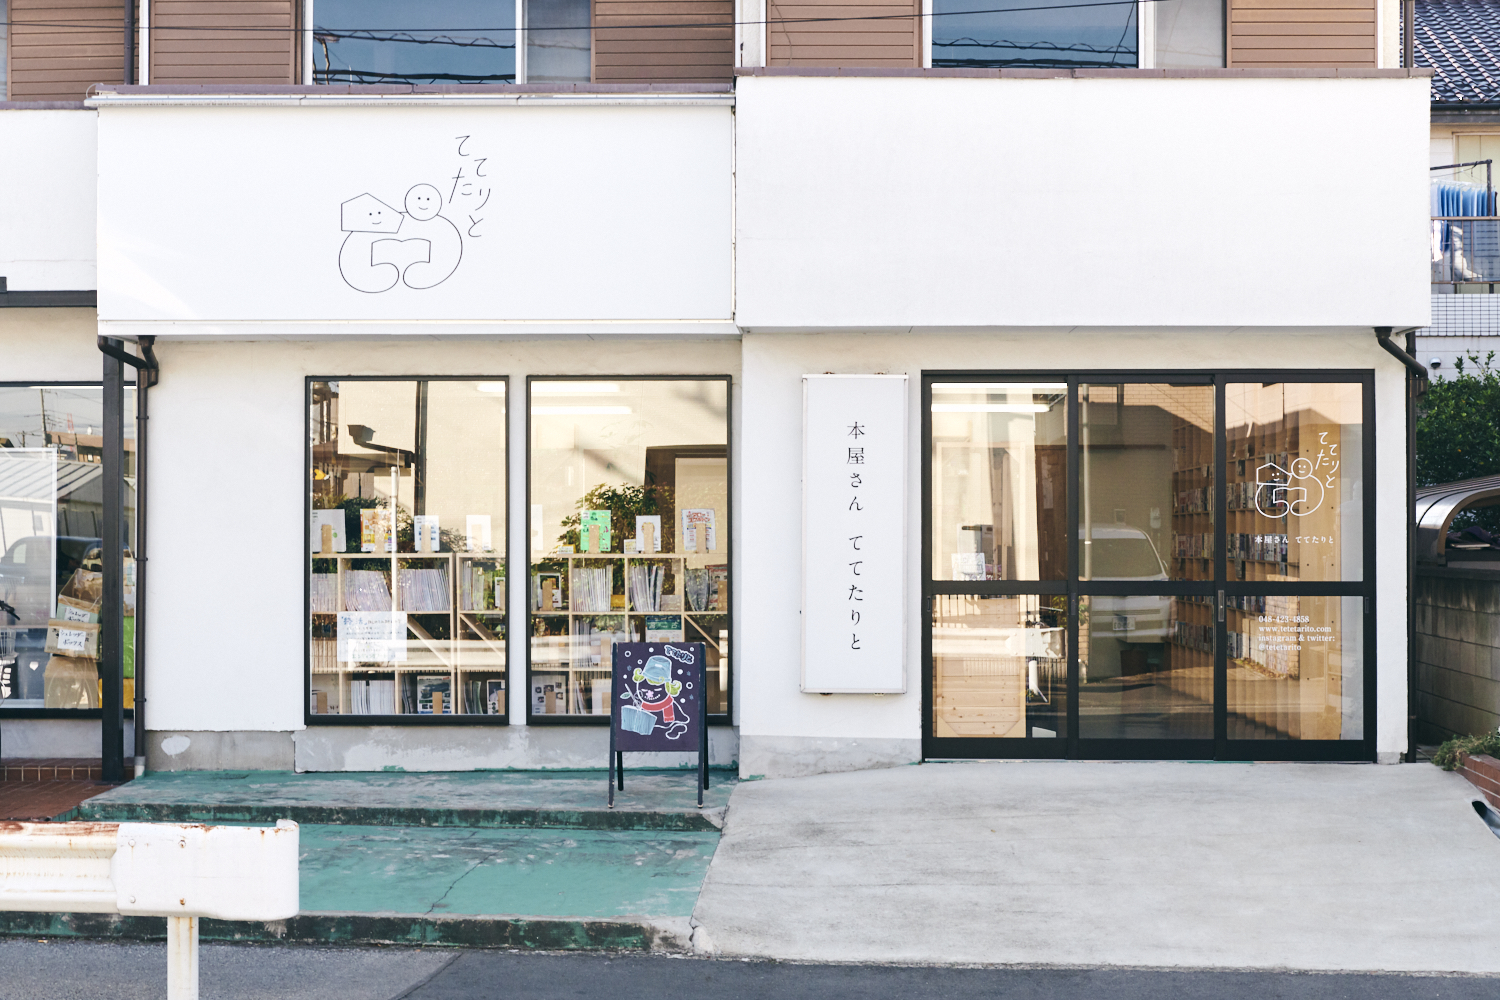 西川口駅からバスで20分ほど、住宅地に小さな書店が現れる。